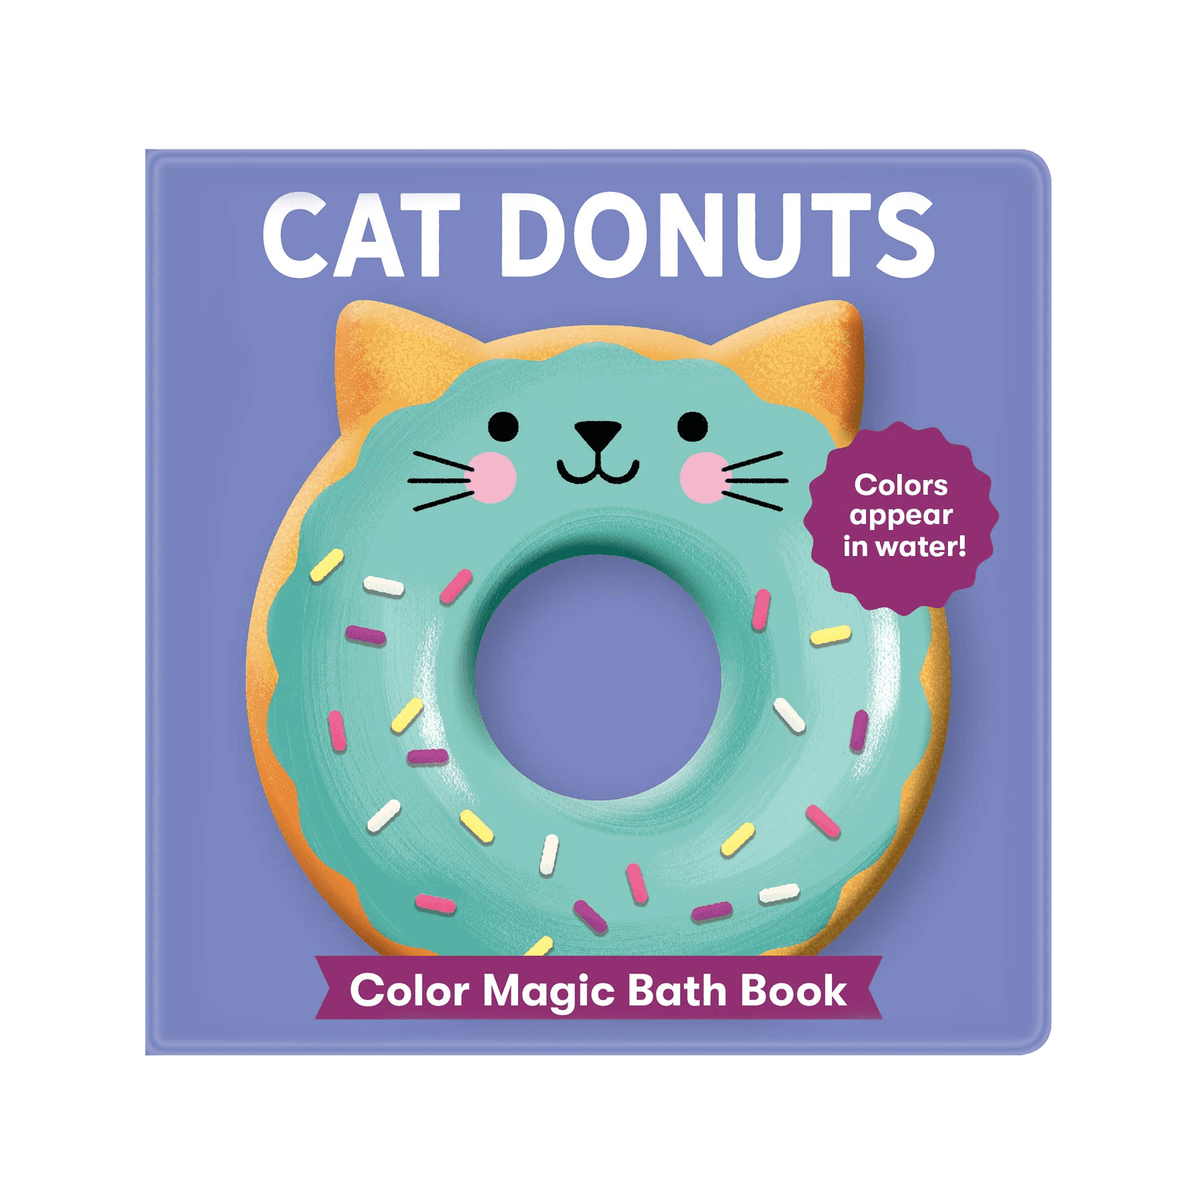 Cat Donuts: Color Magic Bath Book